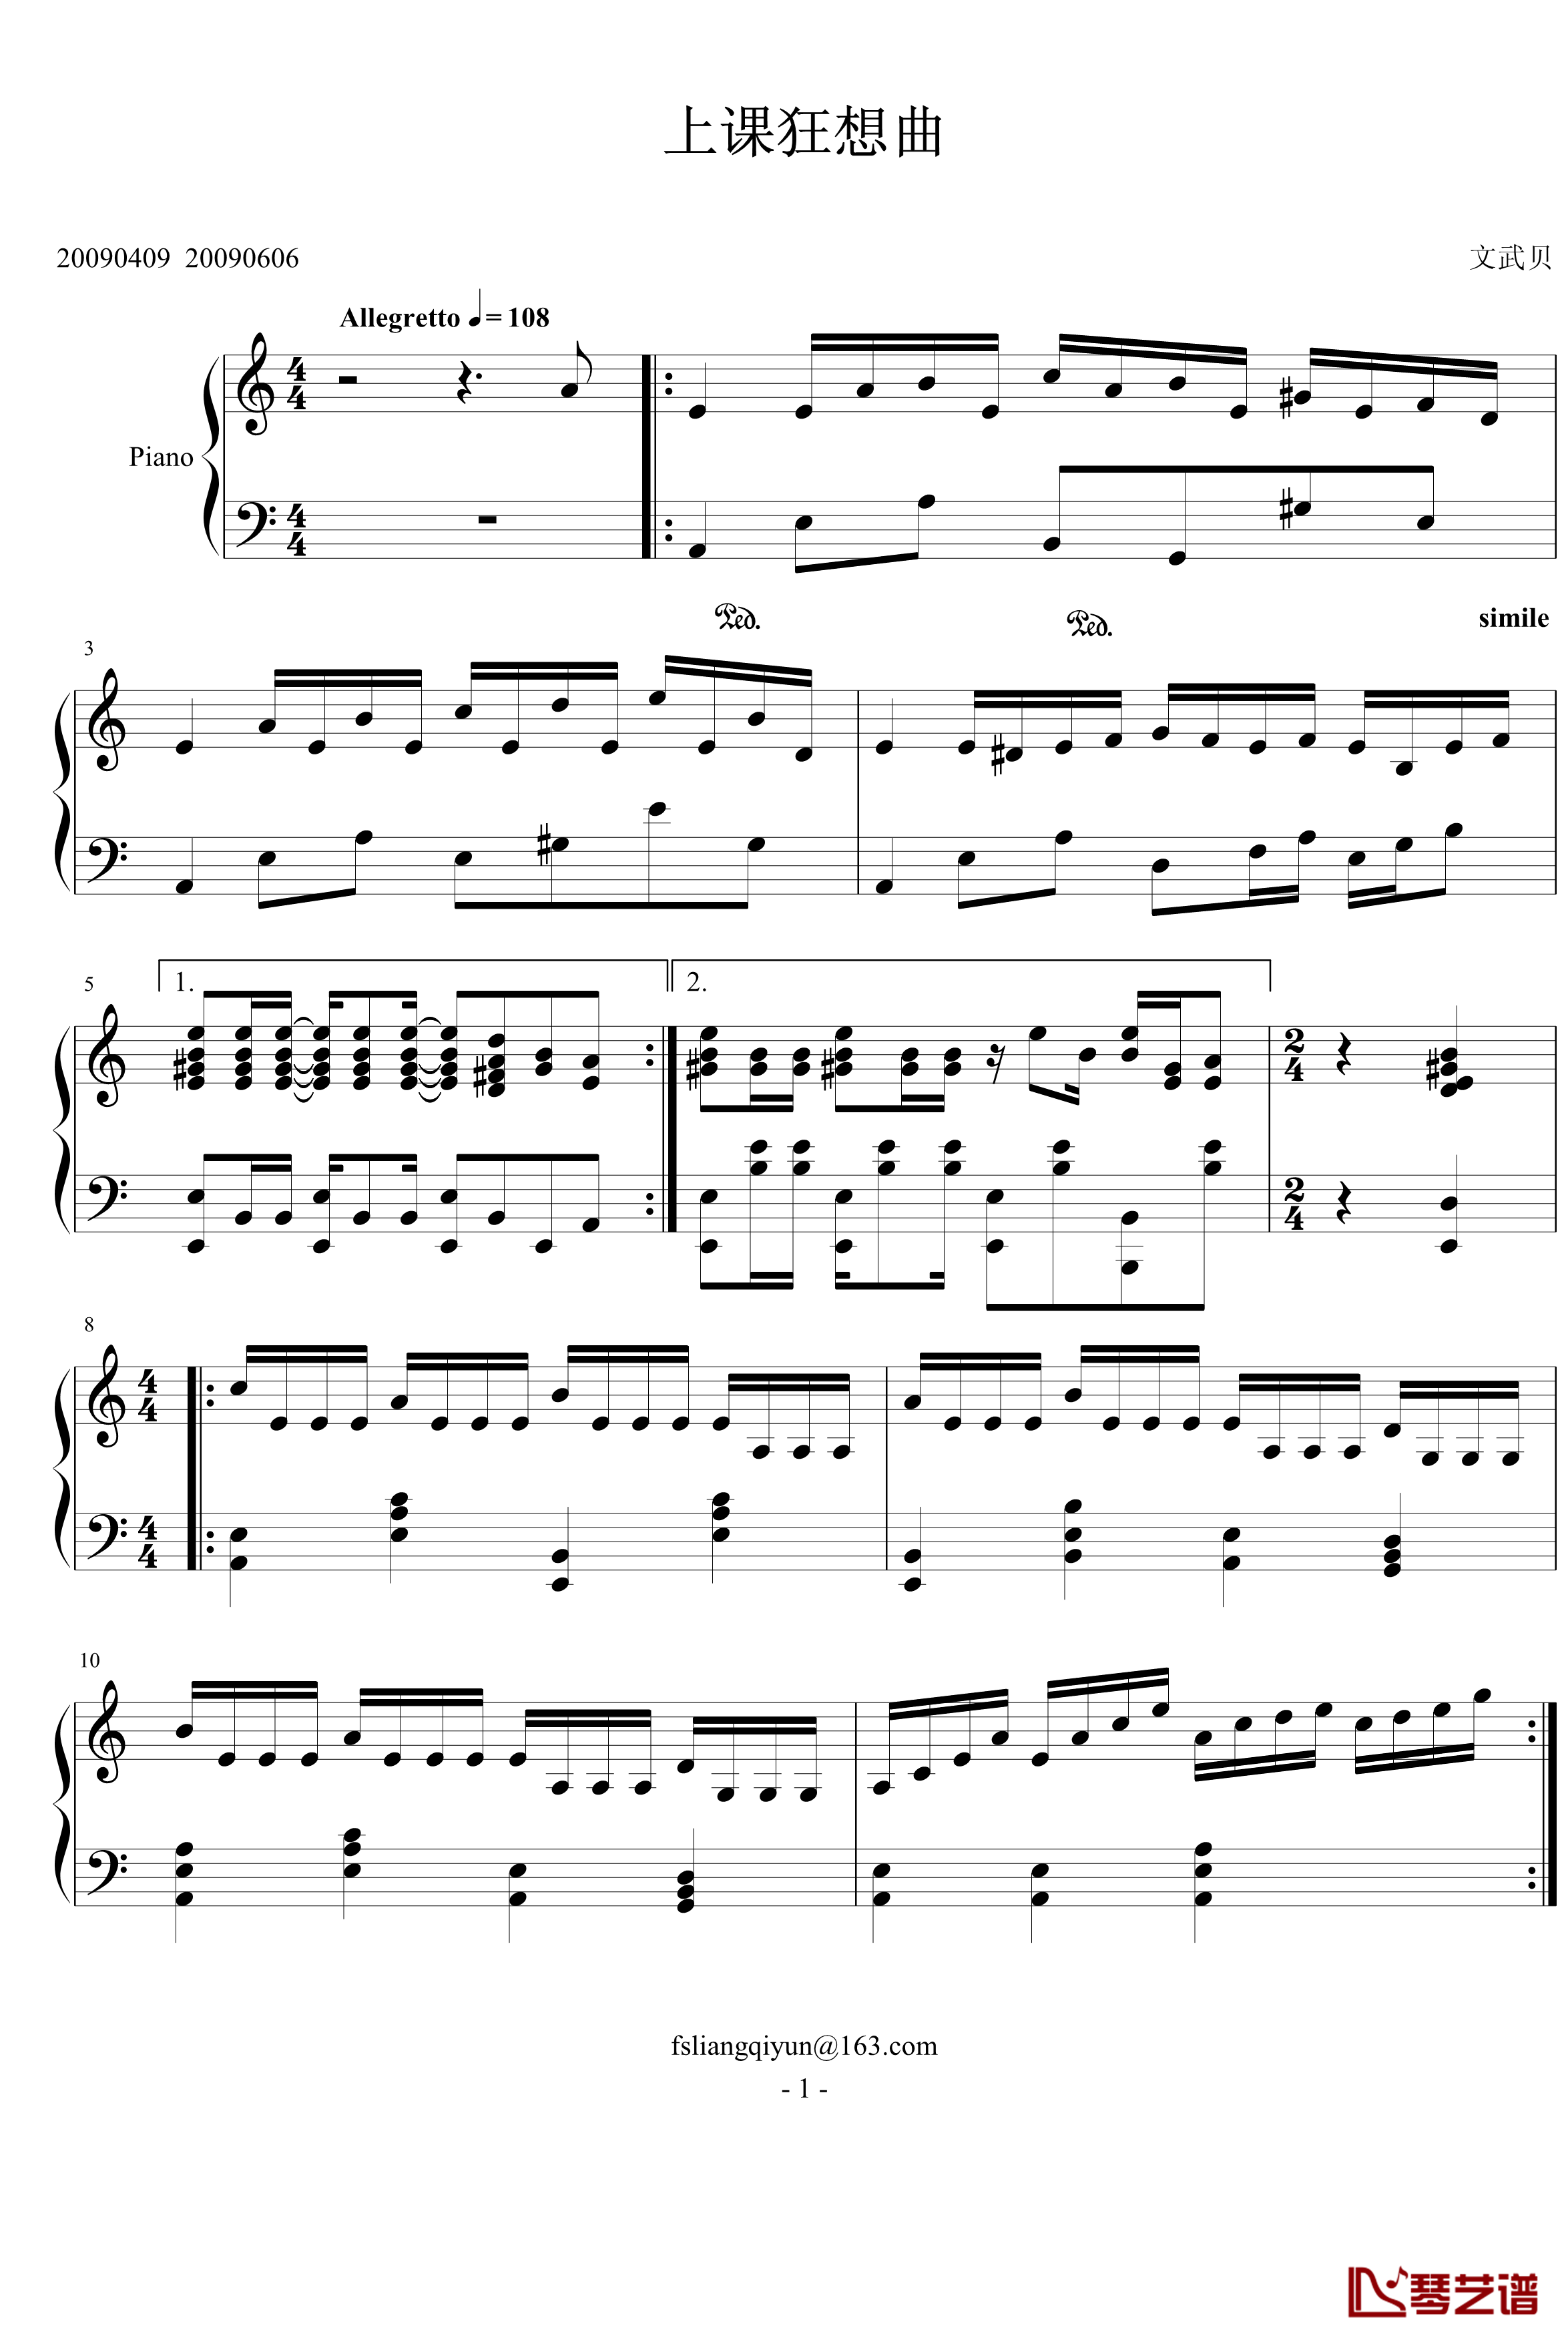 上课狂想曲钢琴谱-文武贝1